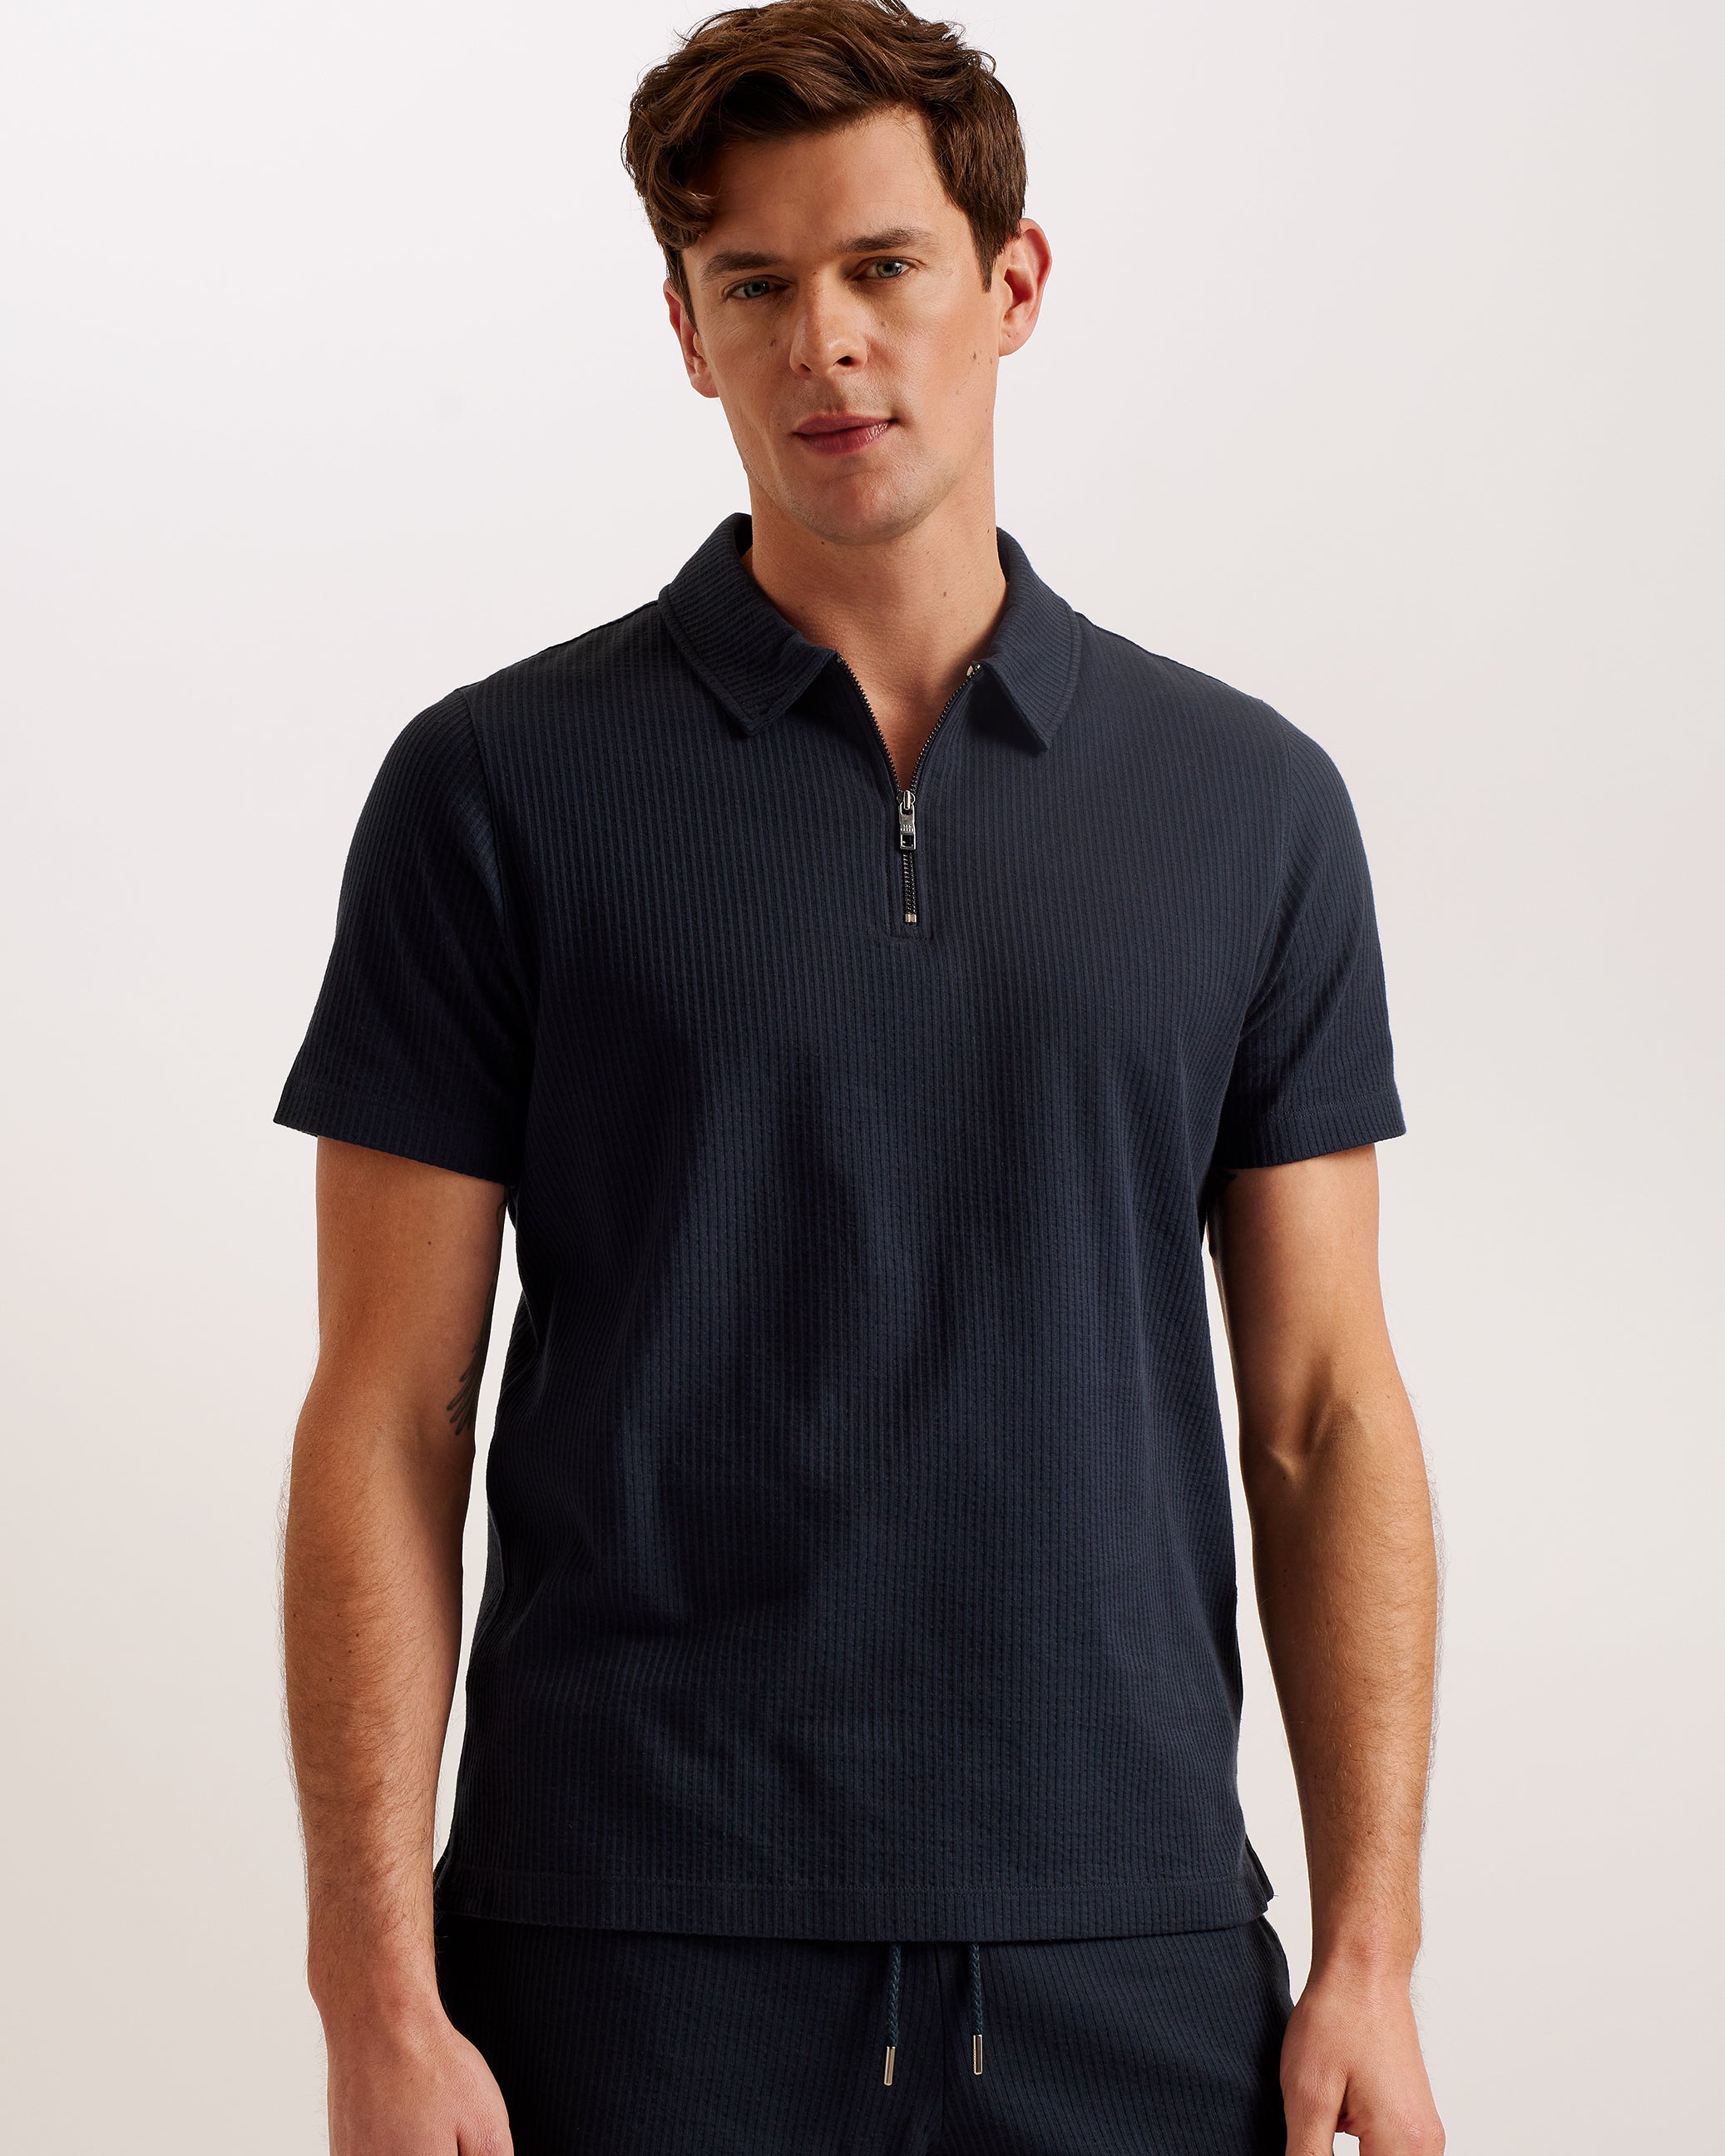 Zarkes Short Sleeve Ribbed Zip Polo Shirt Navy